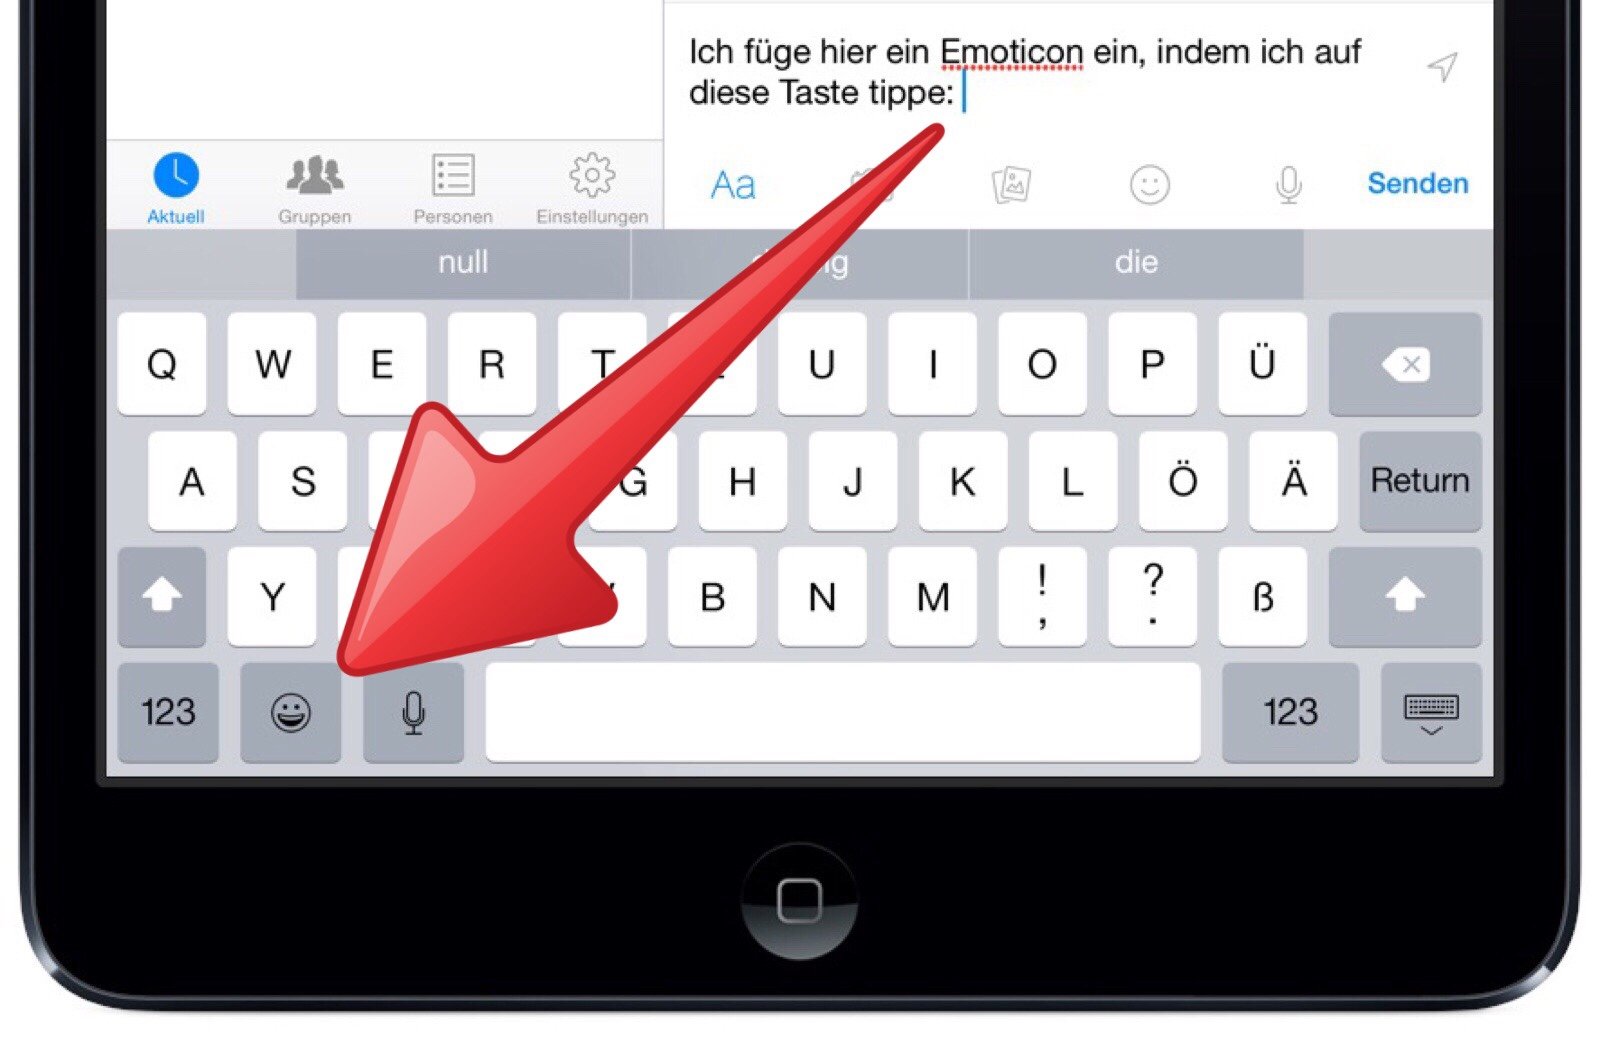 iPad-Facebook-Messenger-Sticker-Emoticon-einfügen-1.jpg